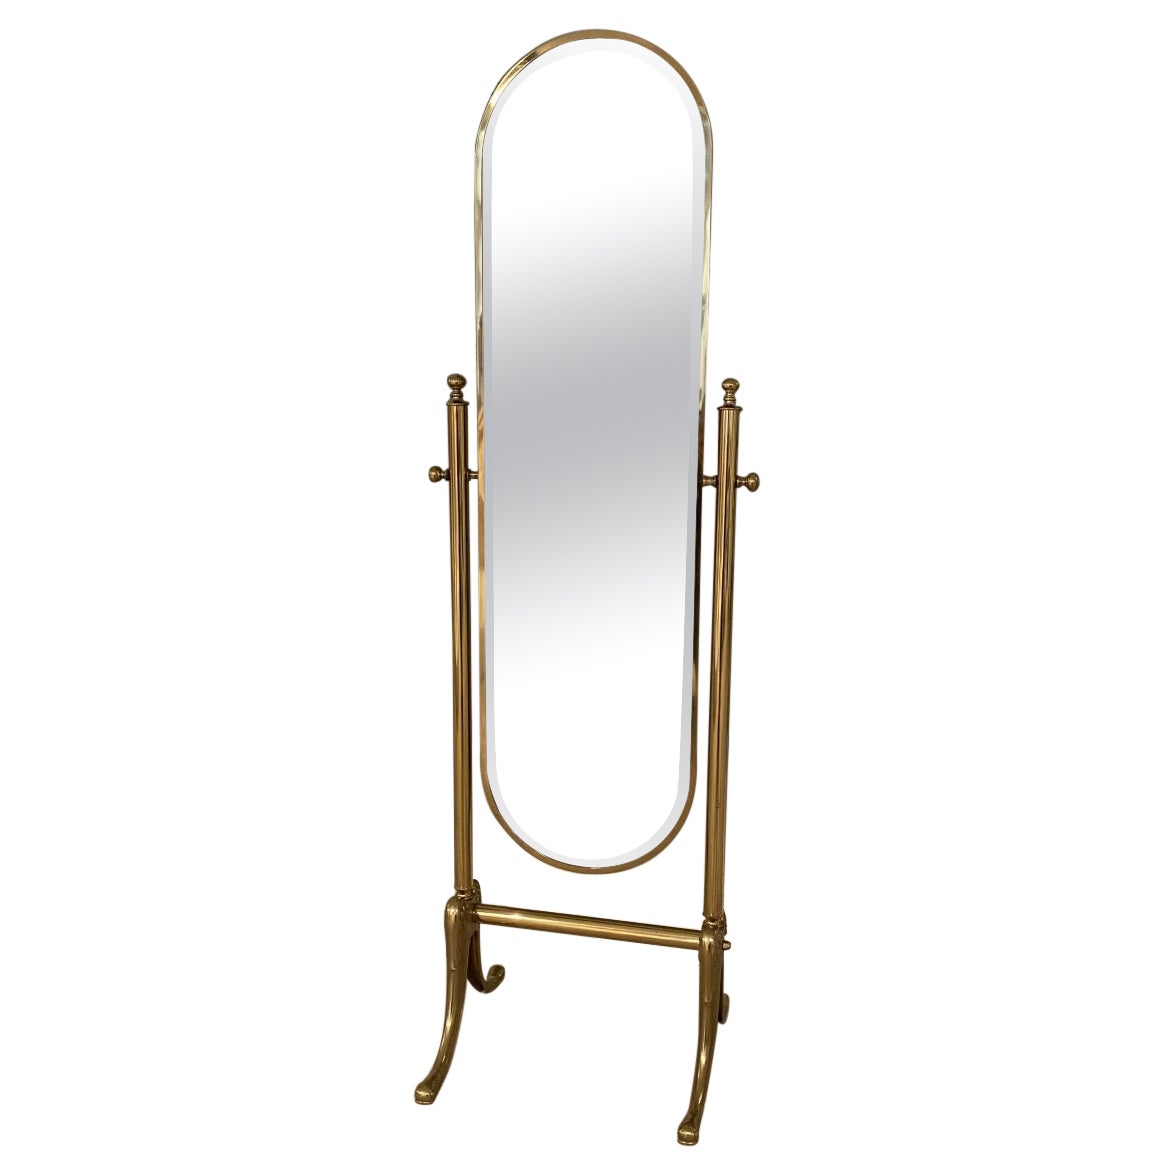 Tilting Elegant Brass Dressing Mirror-60s-70s France